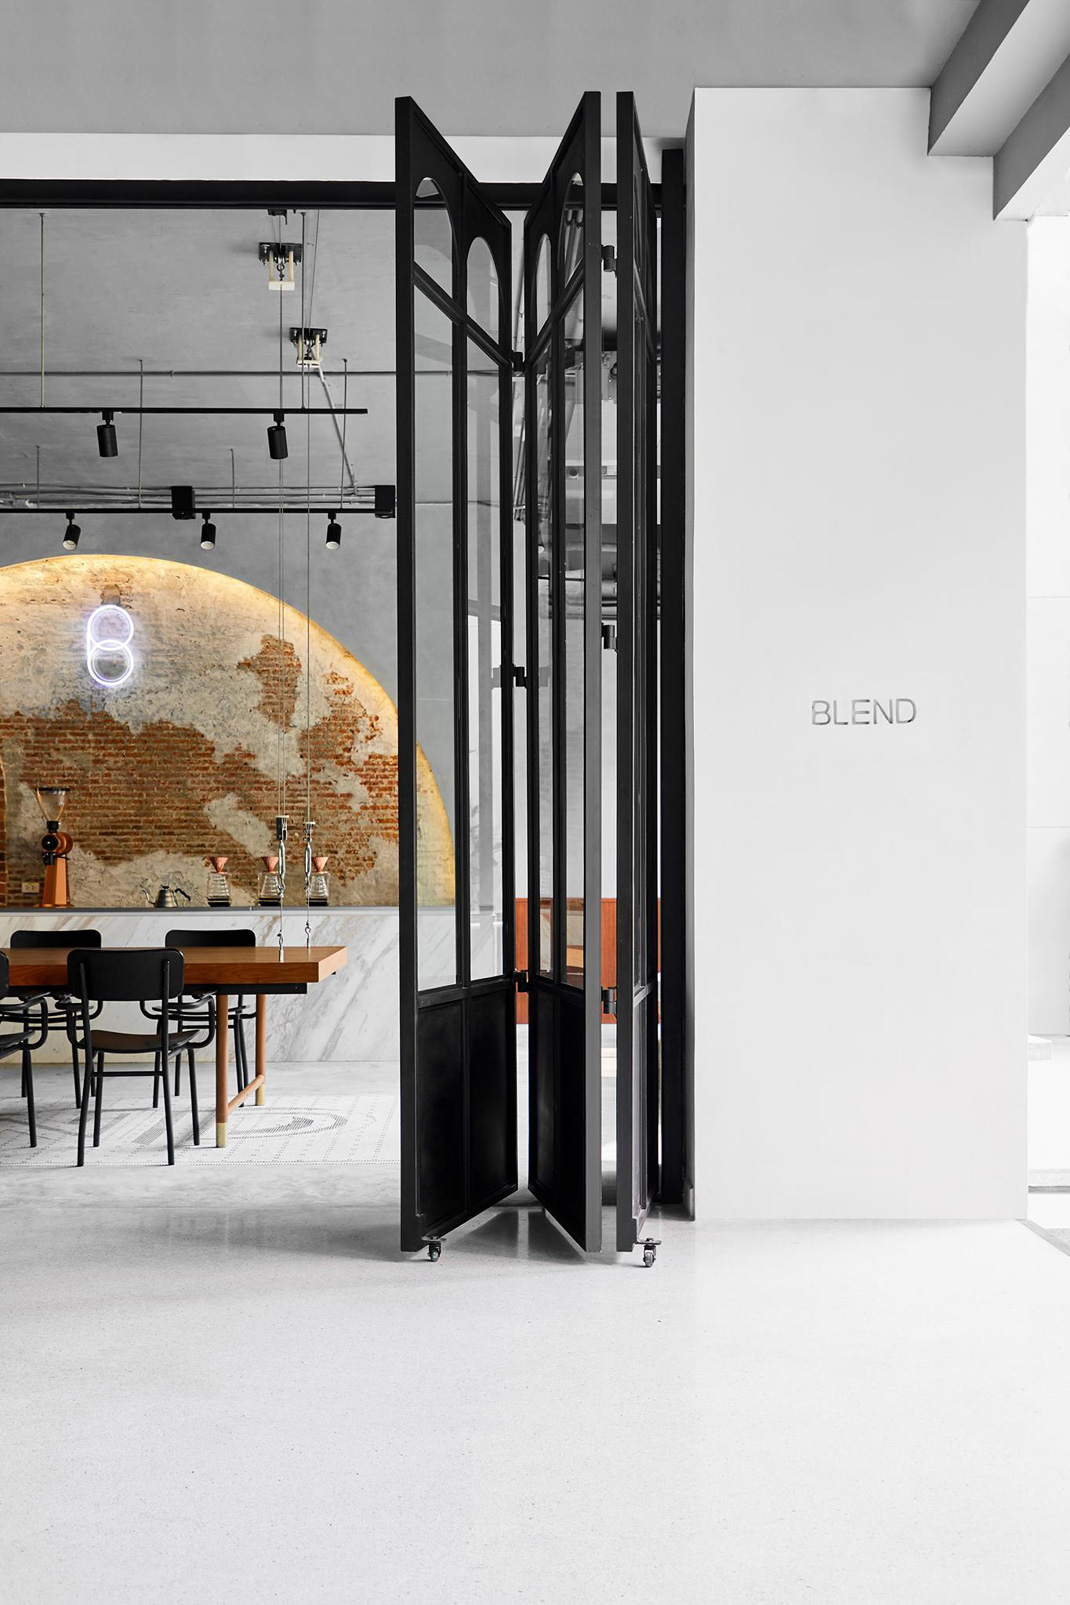 艺术展&画廊空间咖啡馆 泰国 咖啡馆 艺术 画廊 复古 简洁 logo设计 vi设计 空间设计